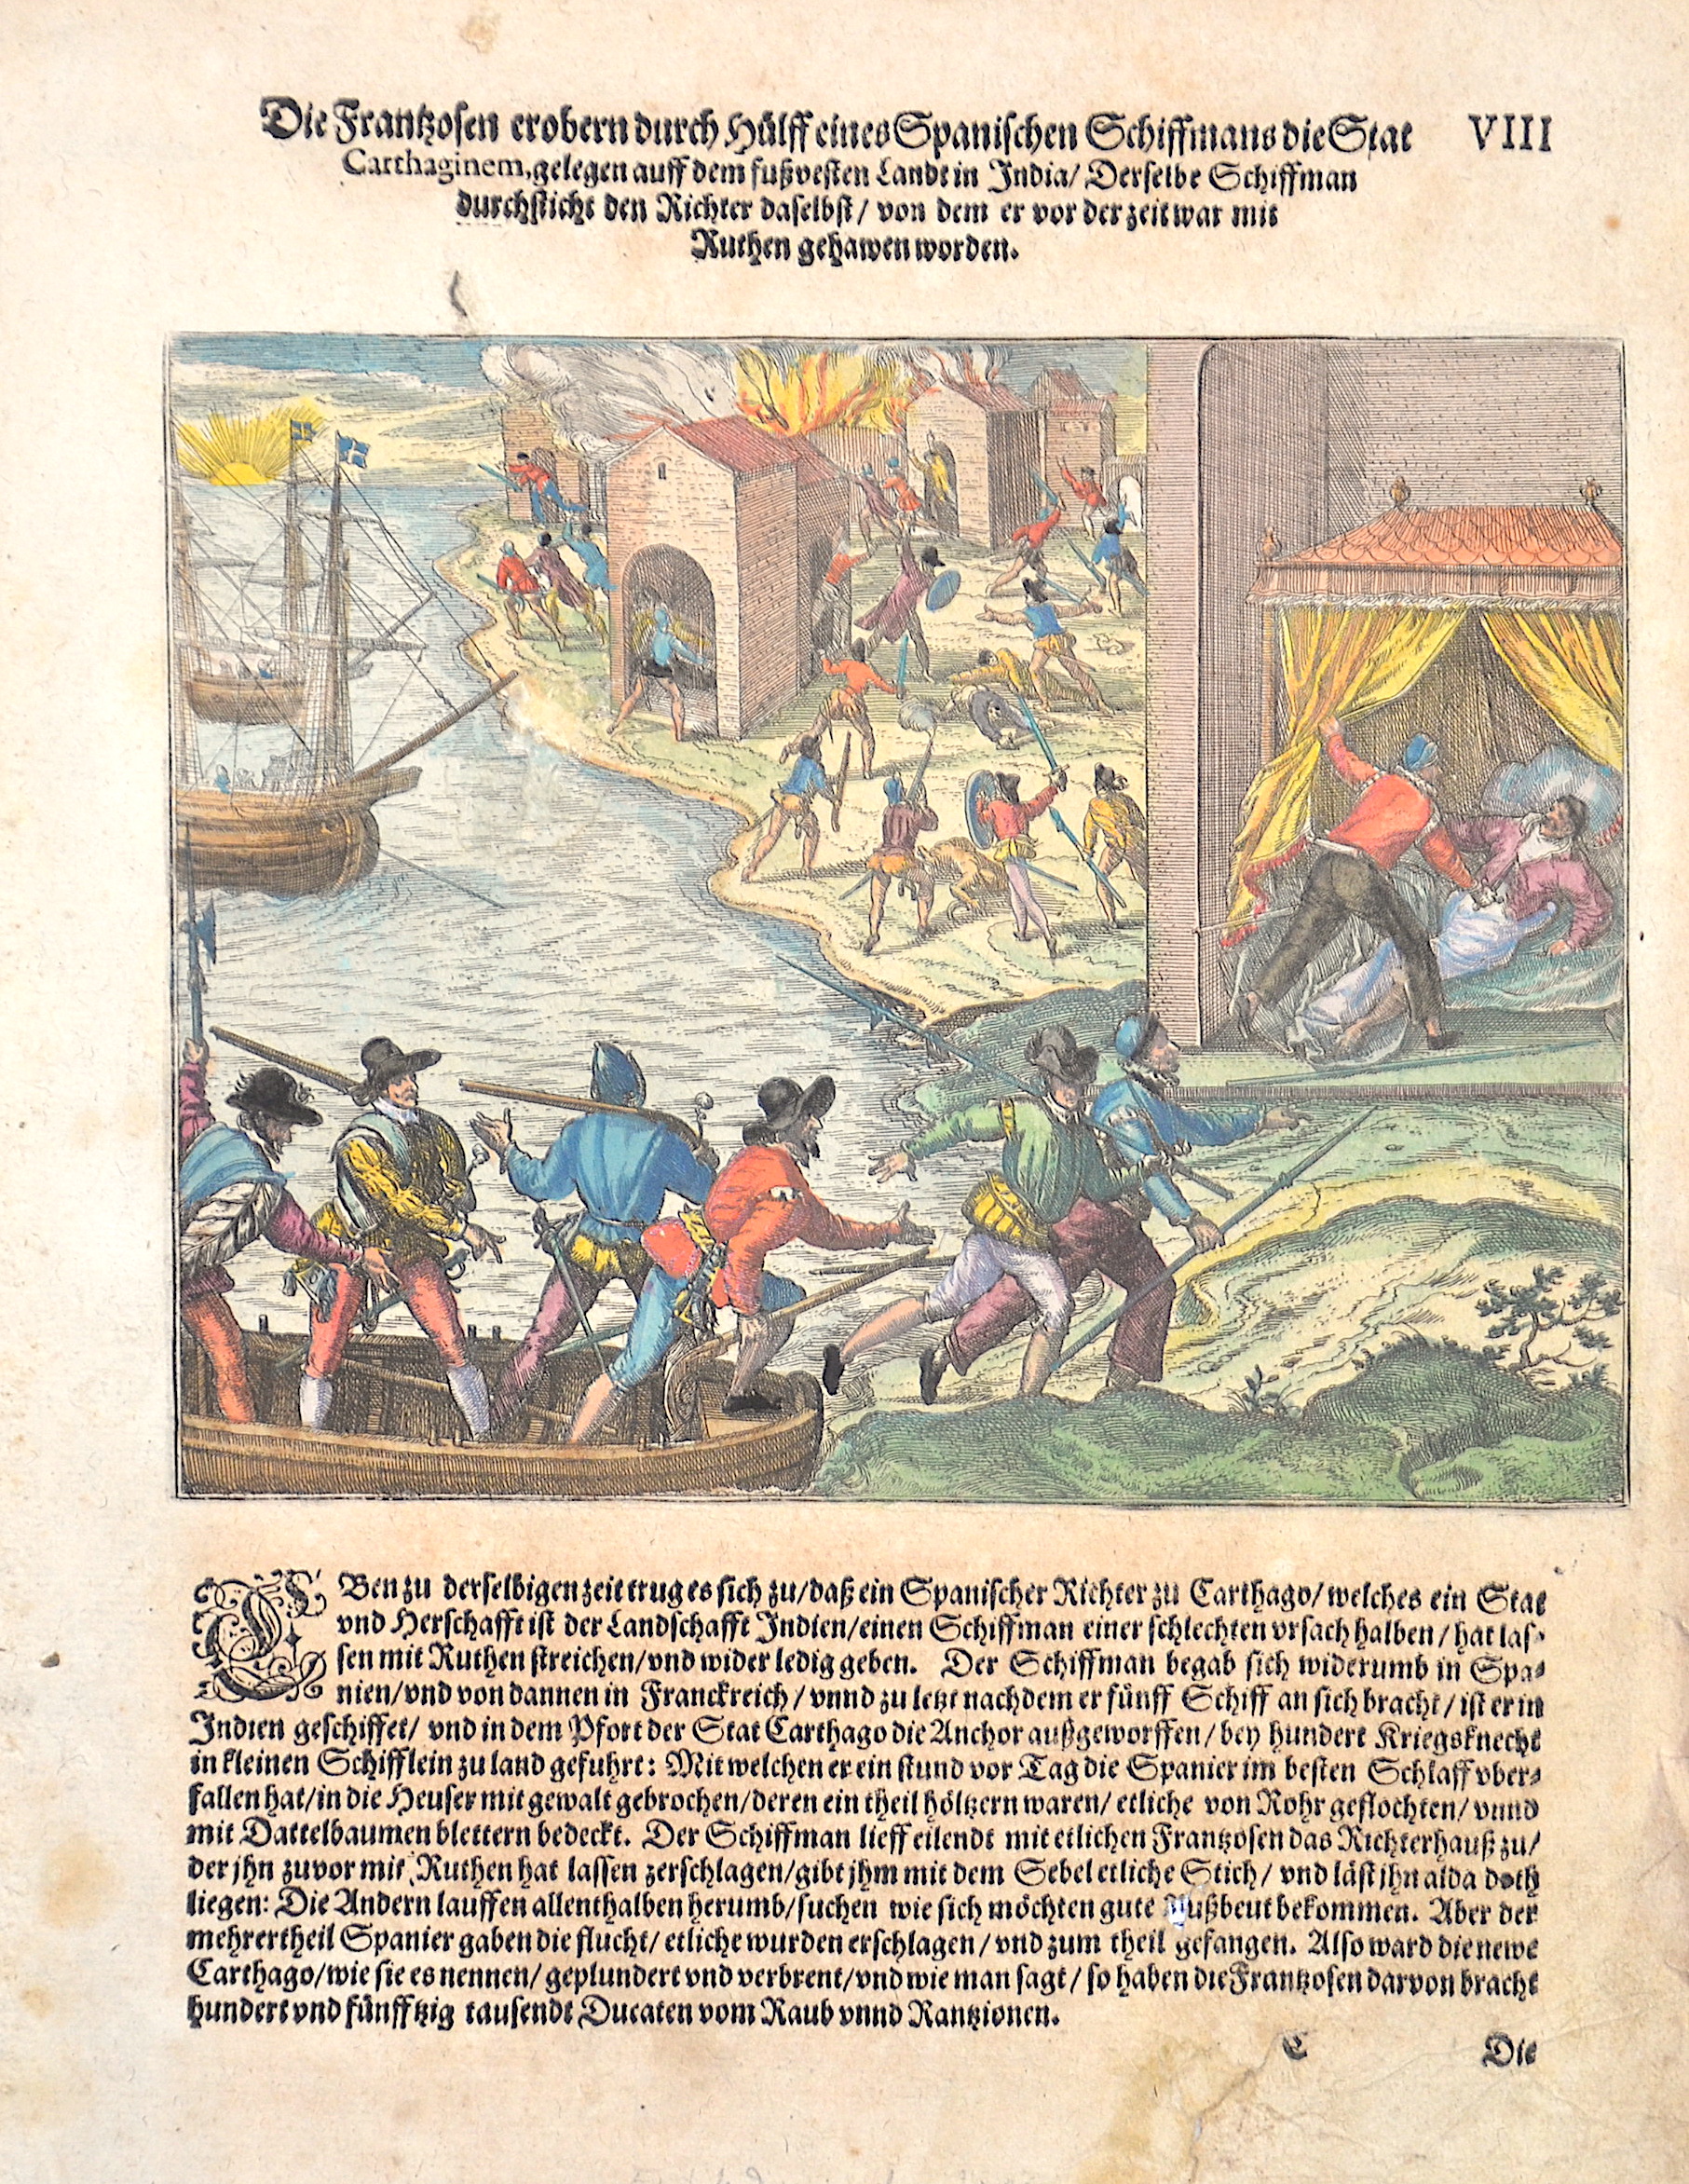 Bry, de  Die Franzosen erobern durch Hülff eines Spanischen Schiffmans die Stat Carthaginem, gelegen auff dem fußvesten Landt in India